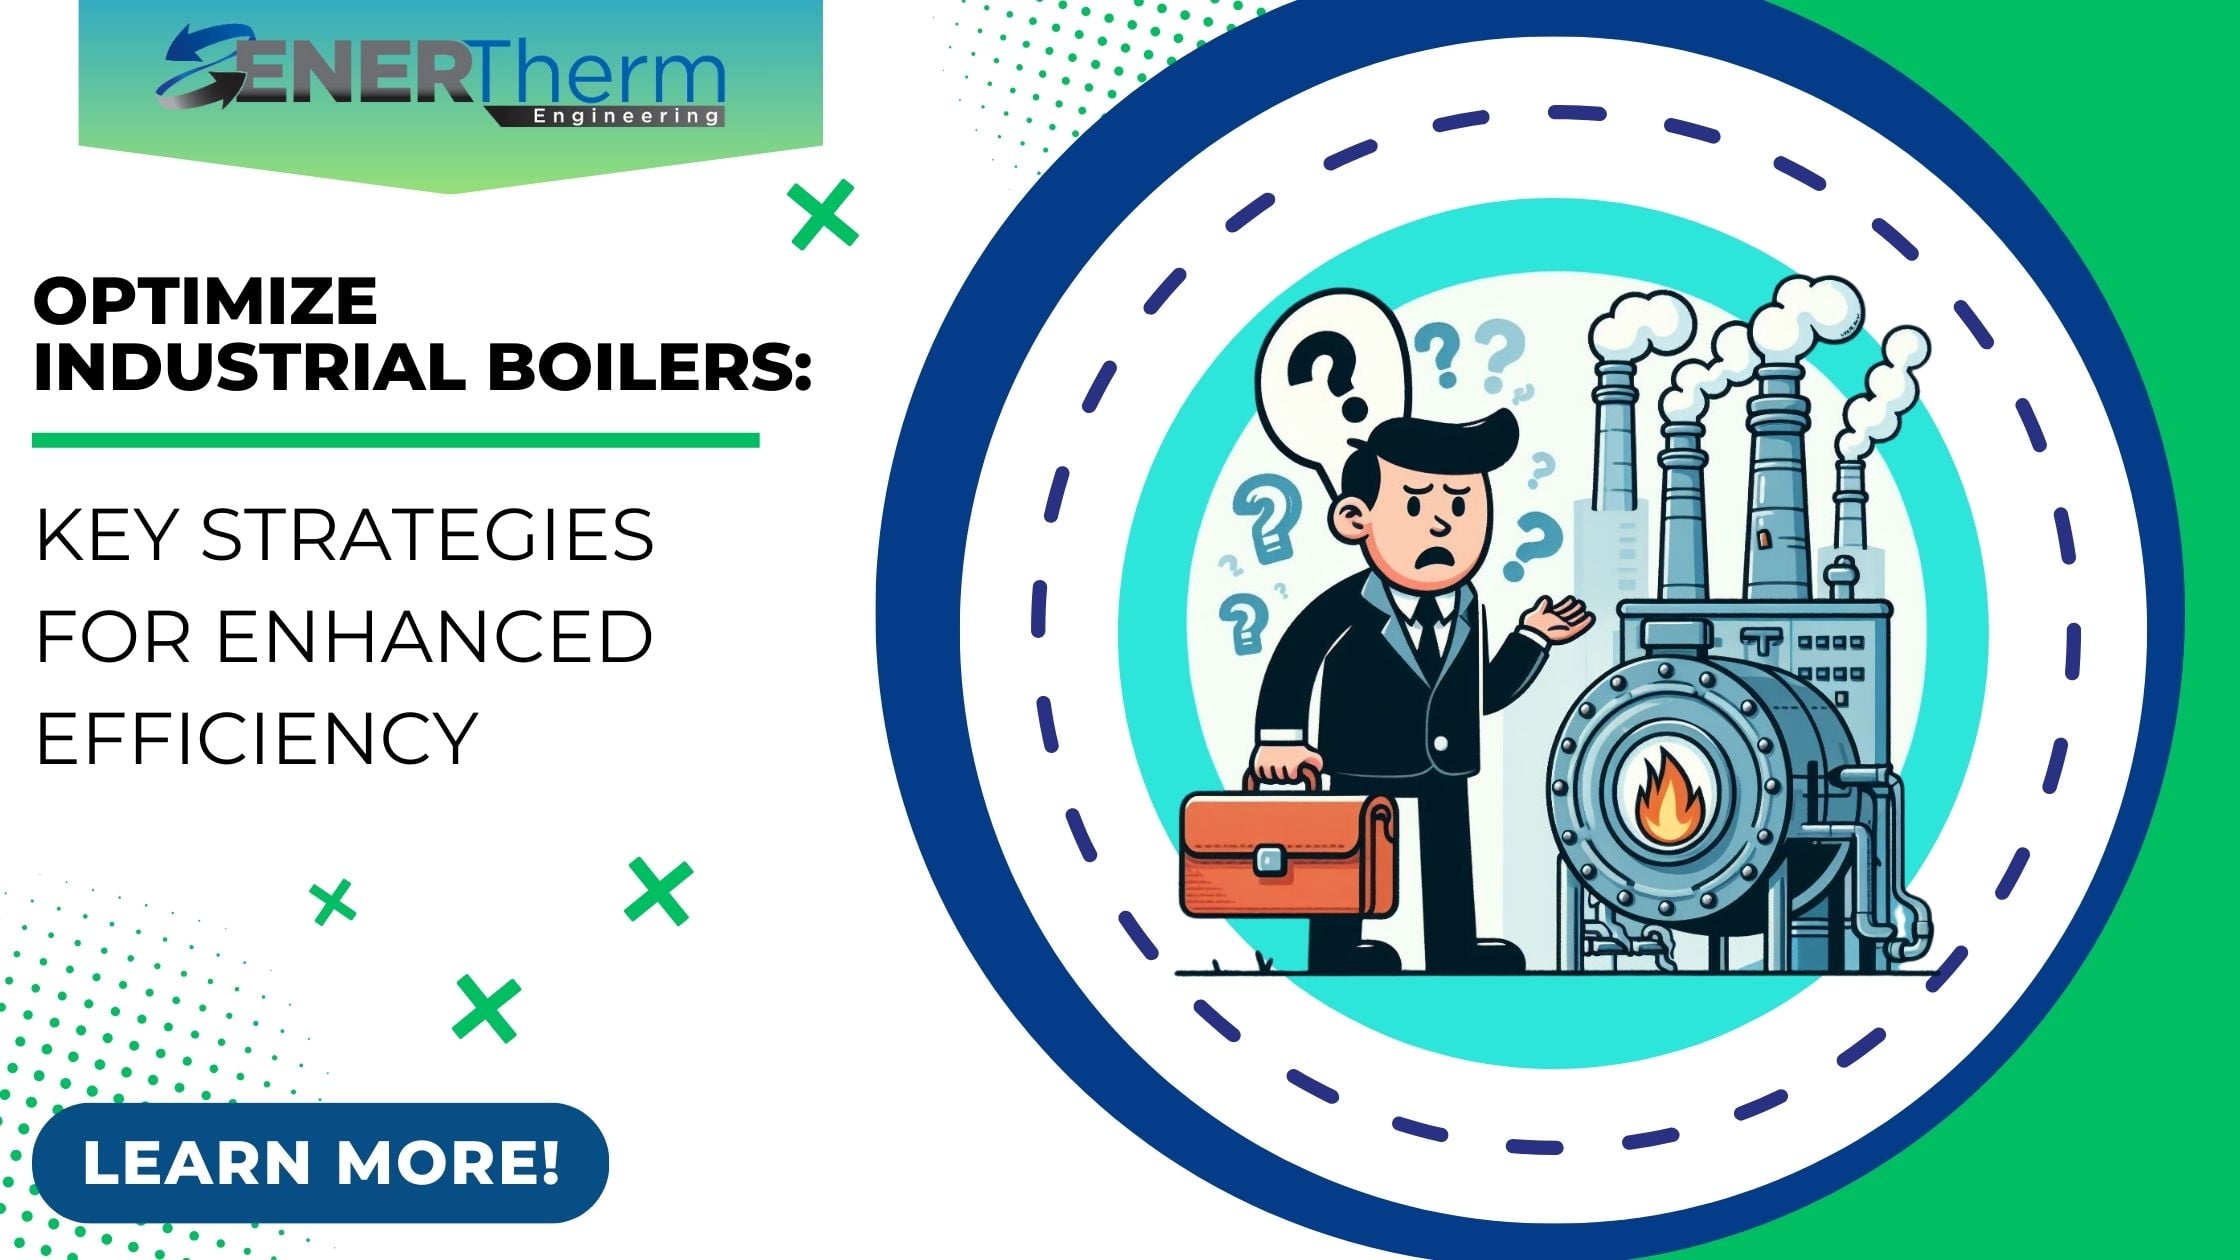 Optimize Industrial Boilers: Key Strategies for Enhanced Efficiency